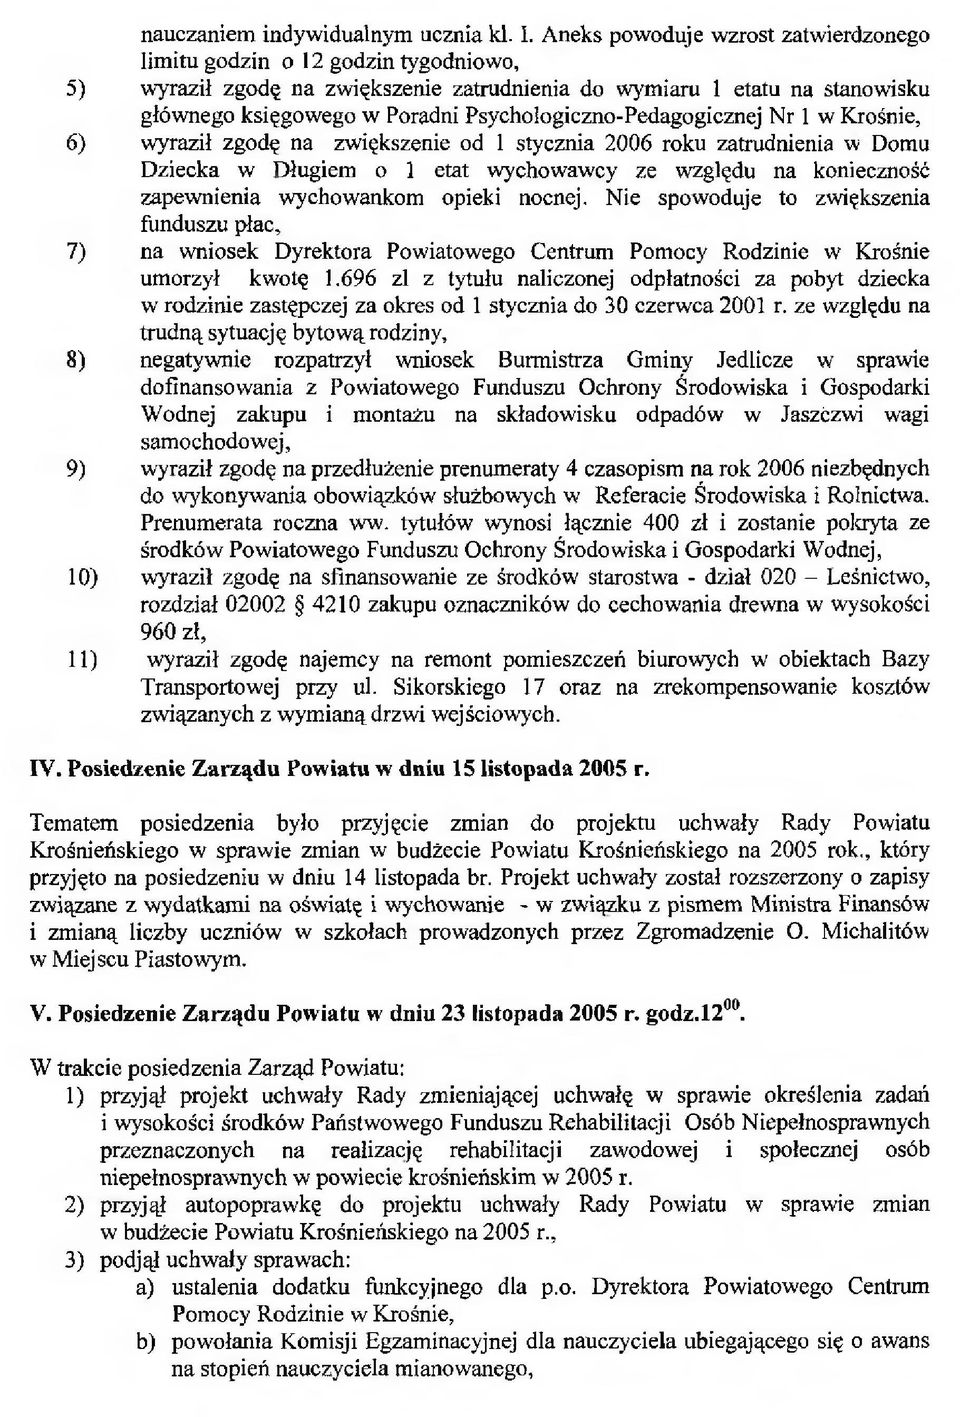 Psychologiczno-Pedagogicznej Nr 1 w Krośnie, 6) wyraził zgodę na zwiększenie od 1 stycznia 2006 roku zatrudnienia w Domu Dziecka w Długiem o 1 etat wychowawcy ze względu na konieczność zapewnienia